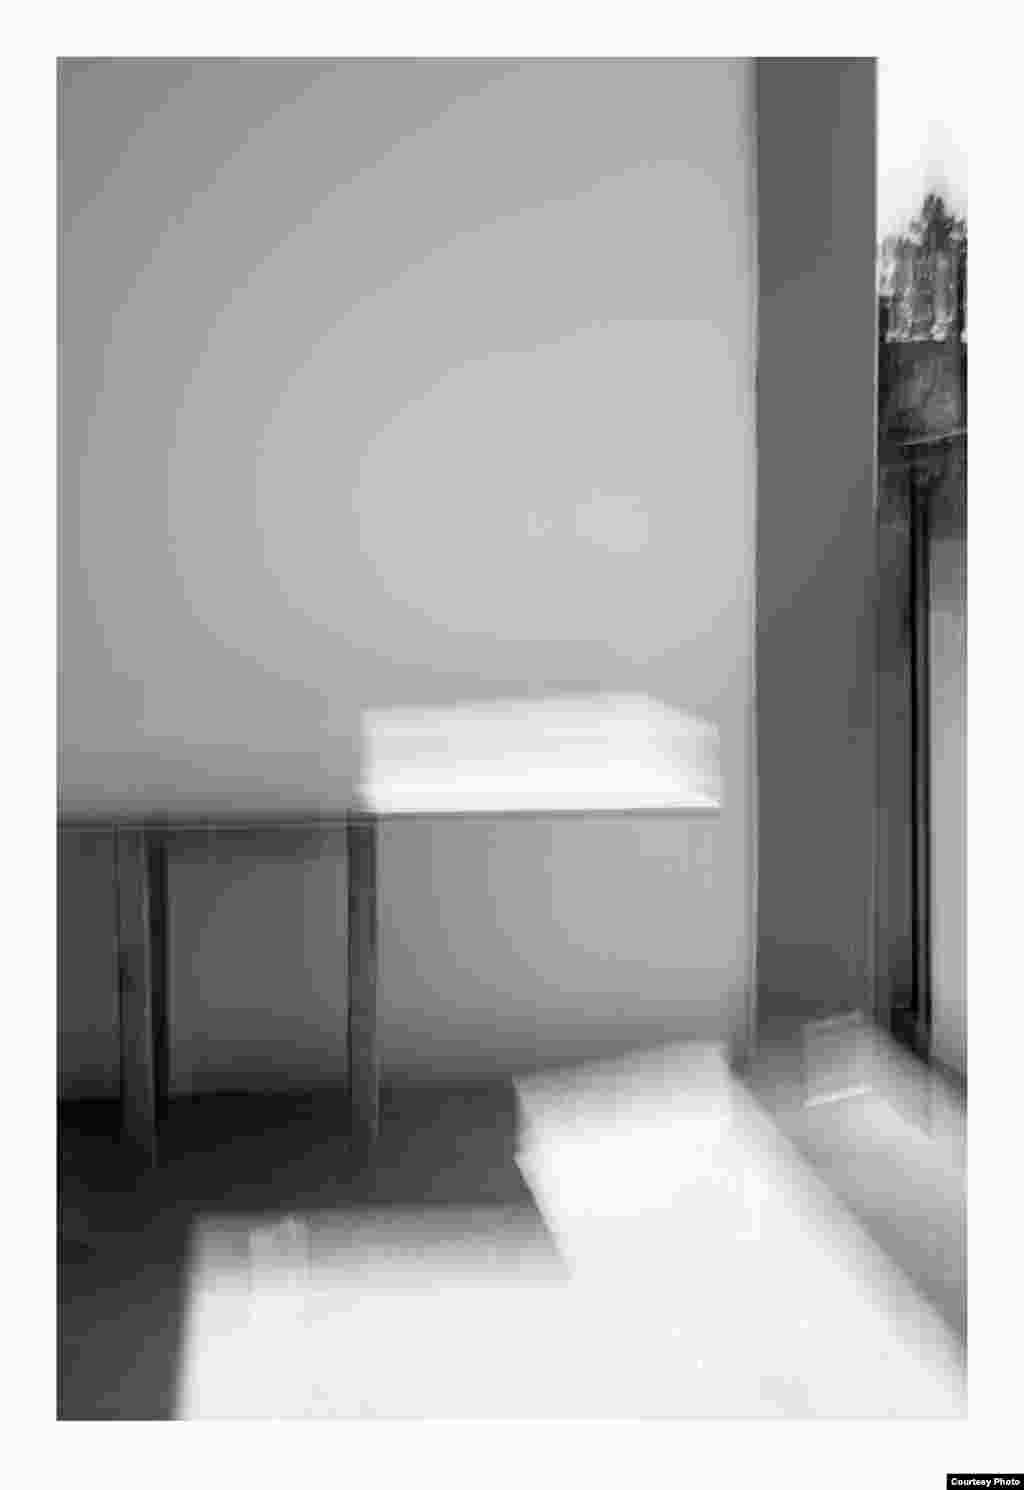 ნათელი მაგიდა. 2016 წელი. ფოტოქაღალდი, შავ-თეთრი ბეჭდვა. მხატვრის და &quot;ჰაუზლერ კონტემპორარის&quot; &nbsp;(ციურიხი) ნებართვით